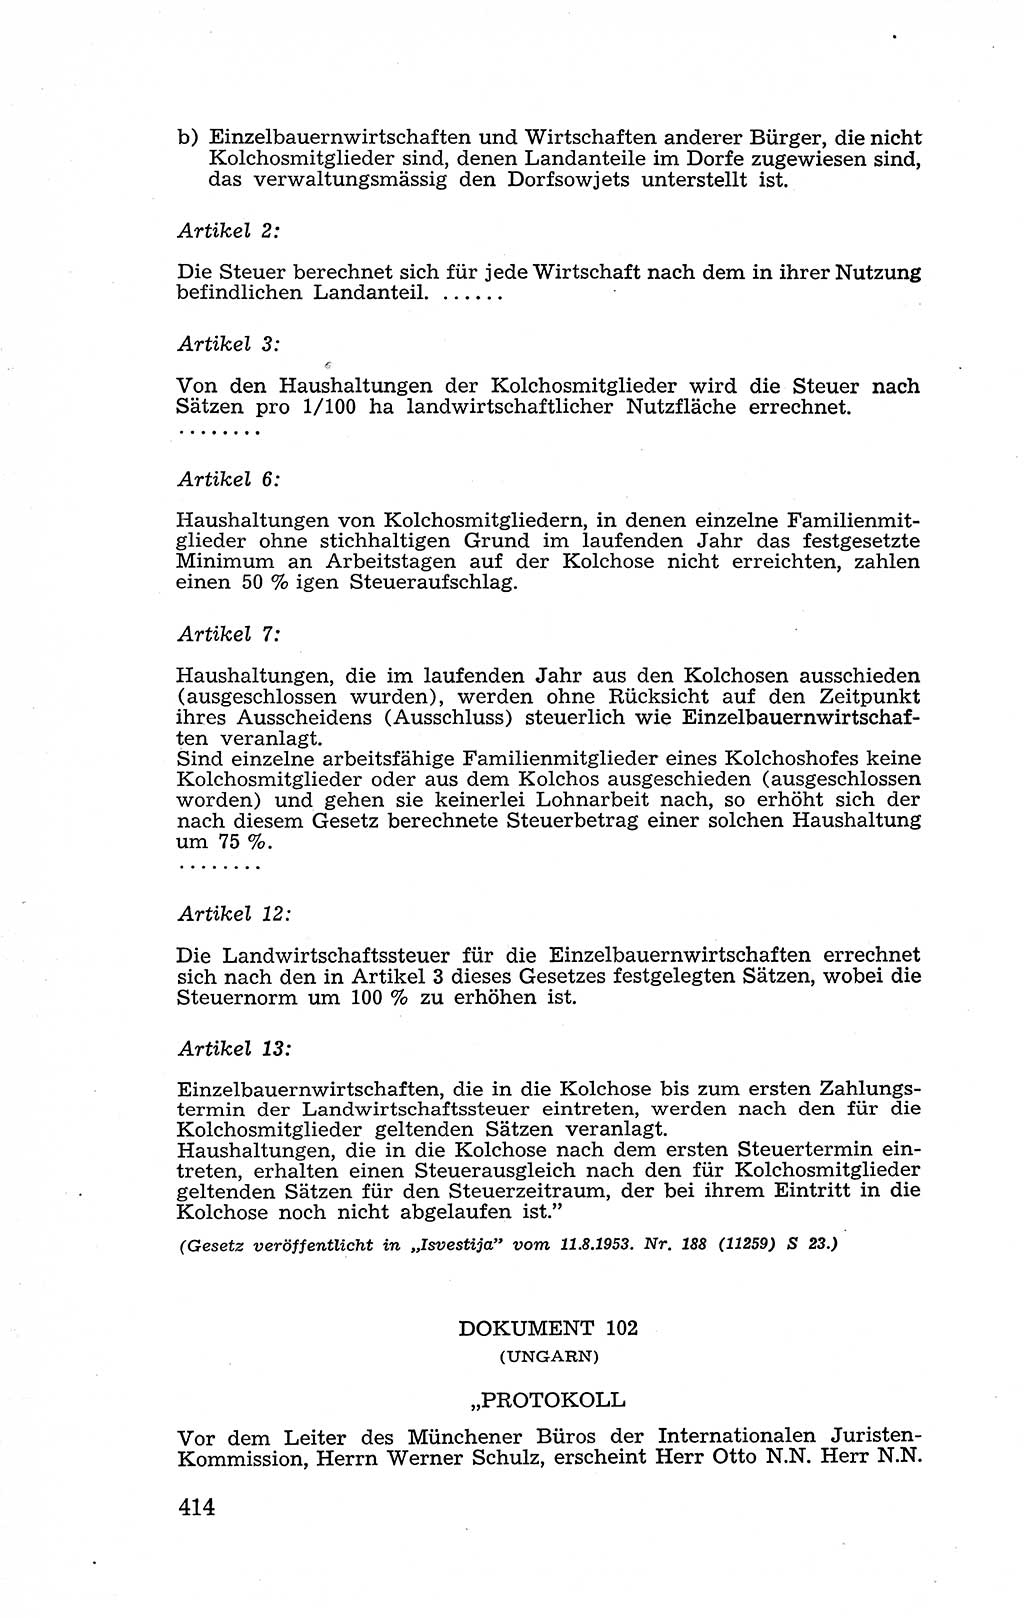 Recht in Fesseln, Dokumente, Internationale Juristen-Kommission [Bundesrepublik Deutschland (BRD)] 1955, Seite 414 (R. Dok. IJK BRD 1955, S. 414)